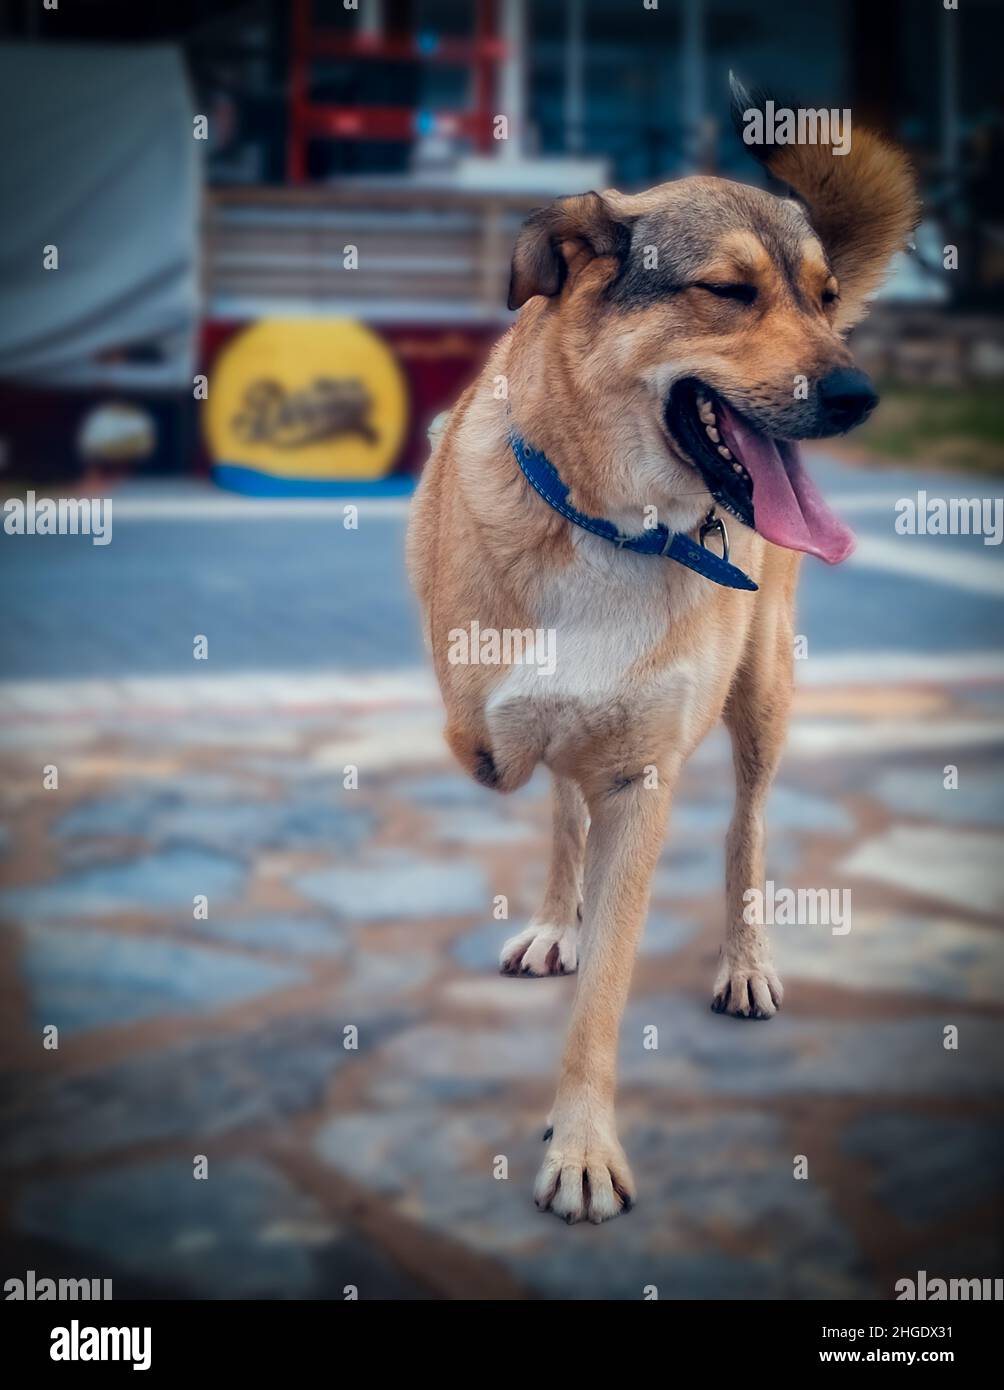 Un chien handicapé avec une jambe manquante sourit à l'appareil photo.Chien handicapé trois jambes debout, chien amputé. Banque D'Images